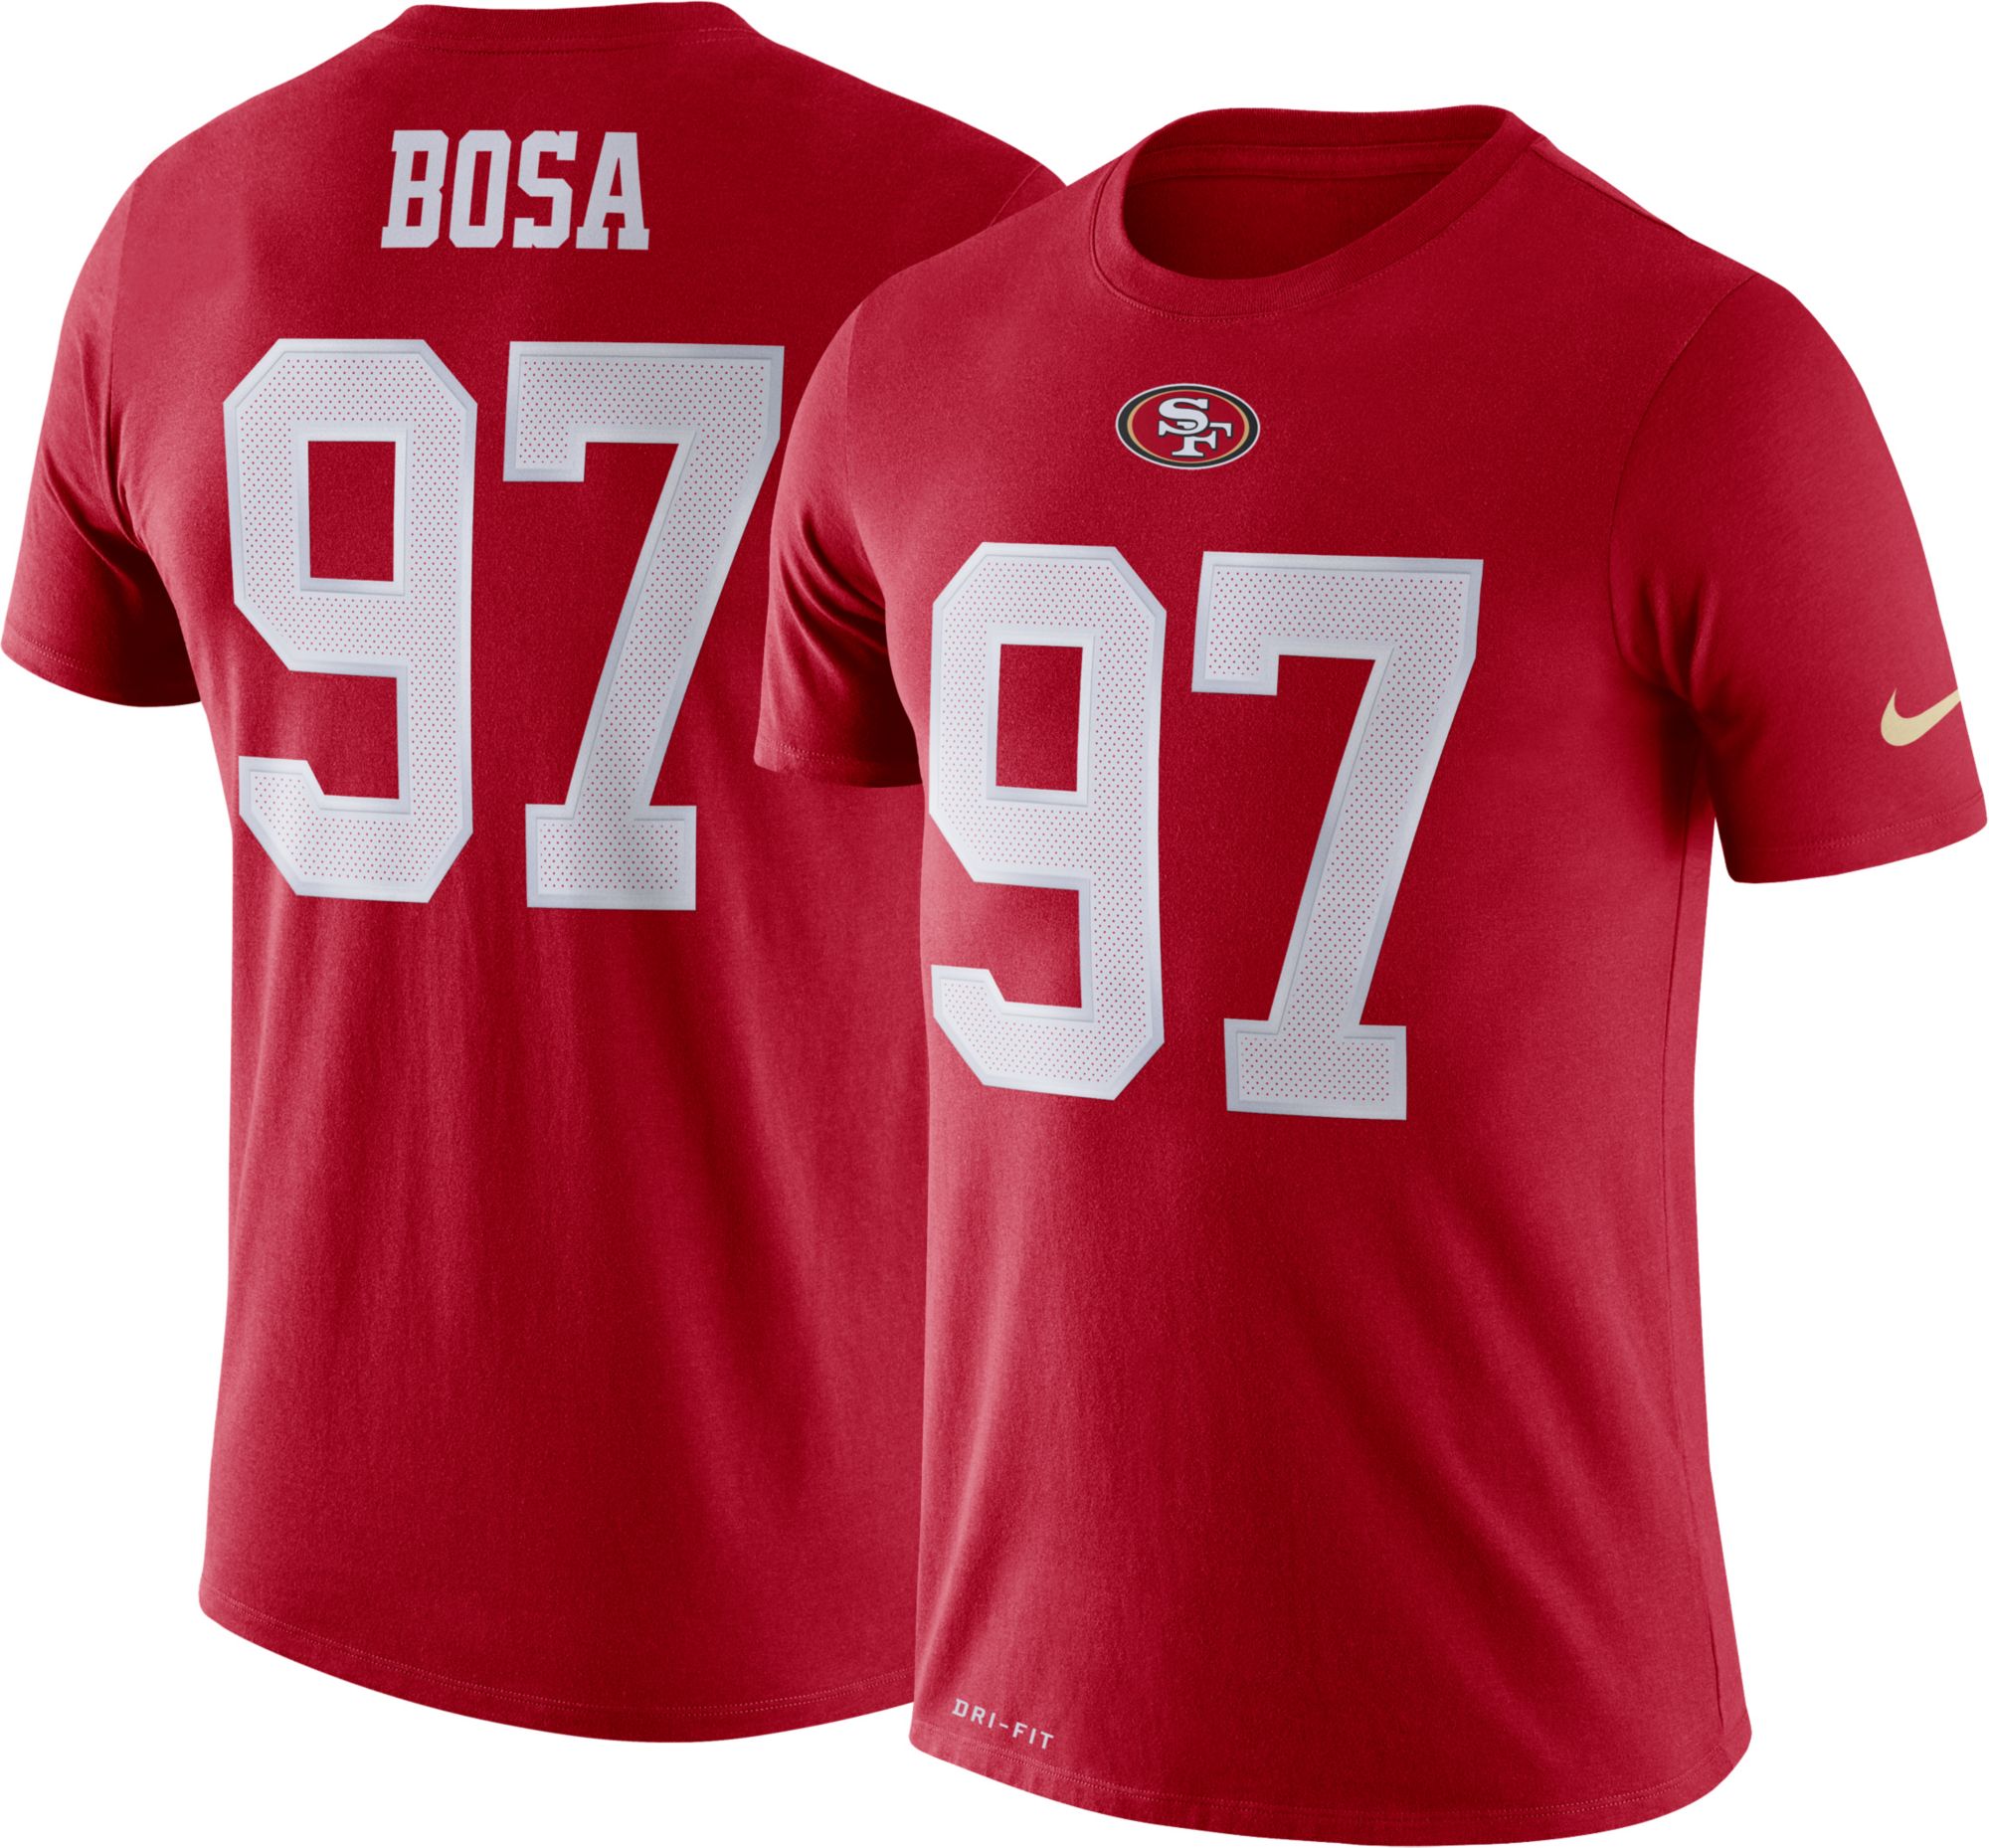 Nick Bosa Jerseys Women T shirt